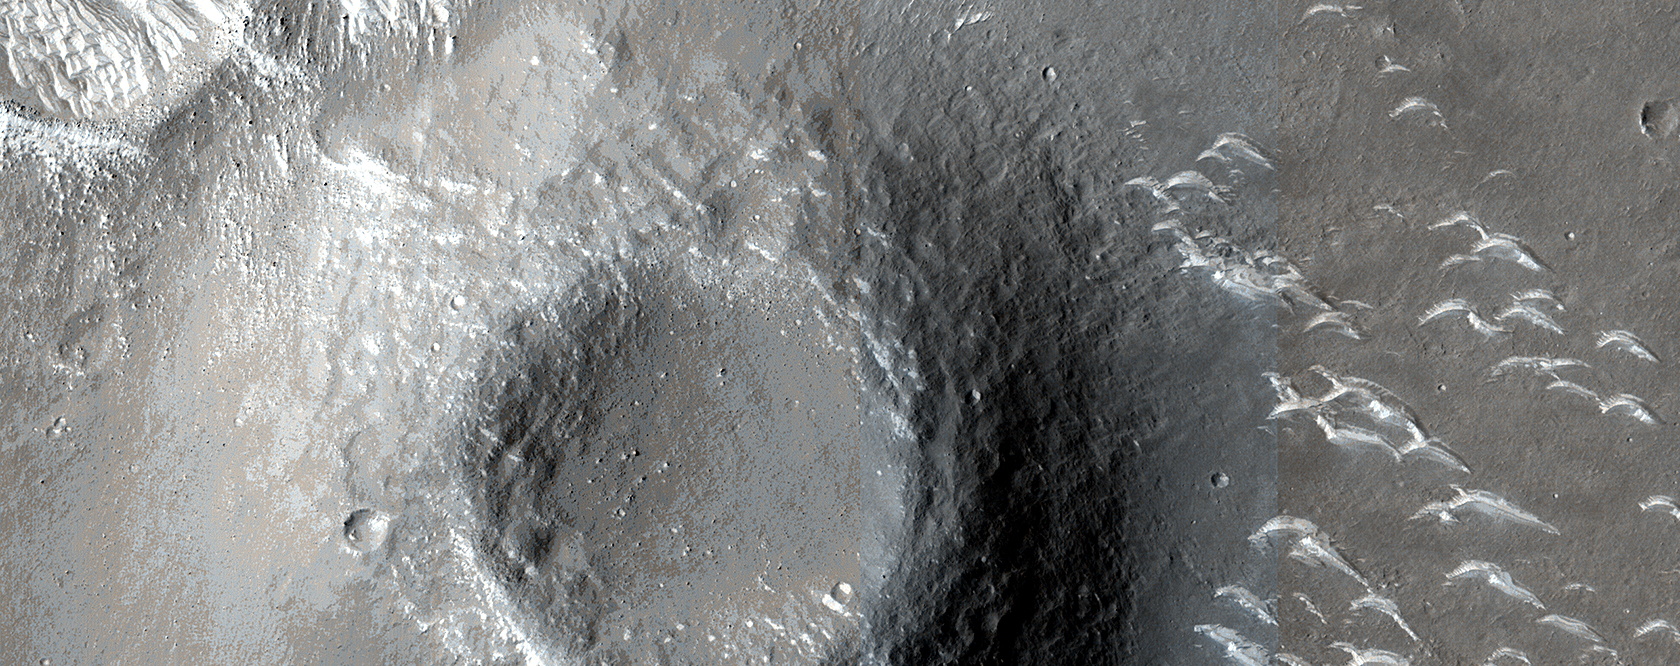 El rover Zhurong explora Utopia Planitia